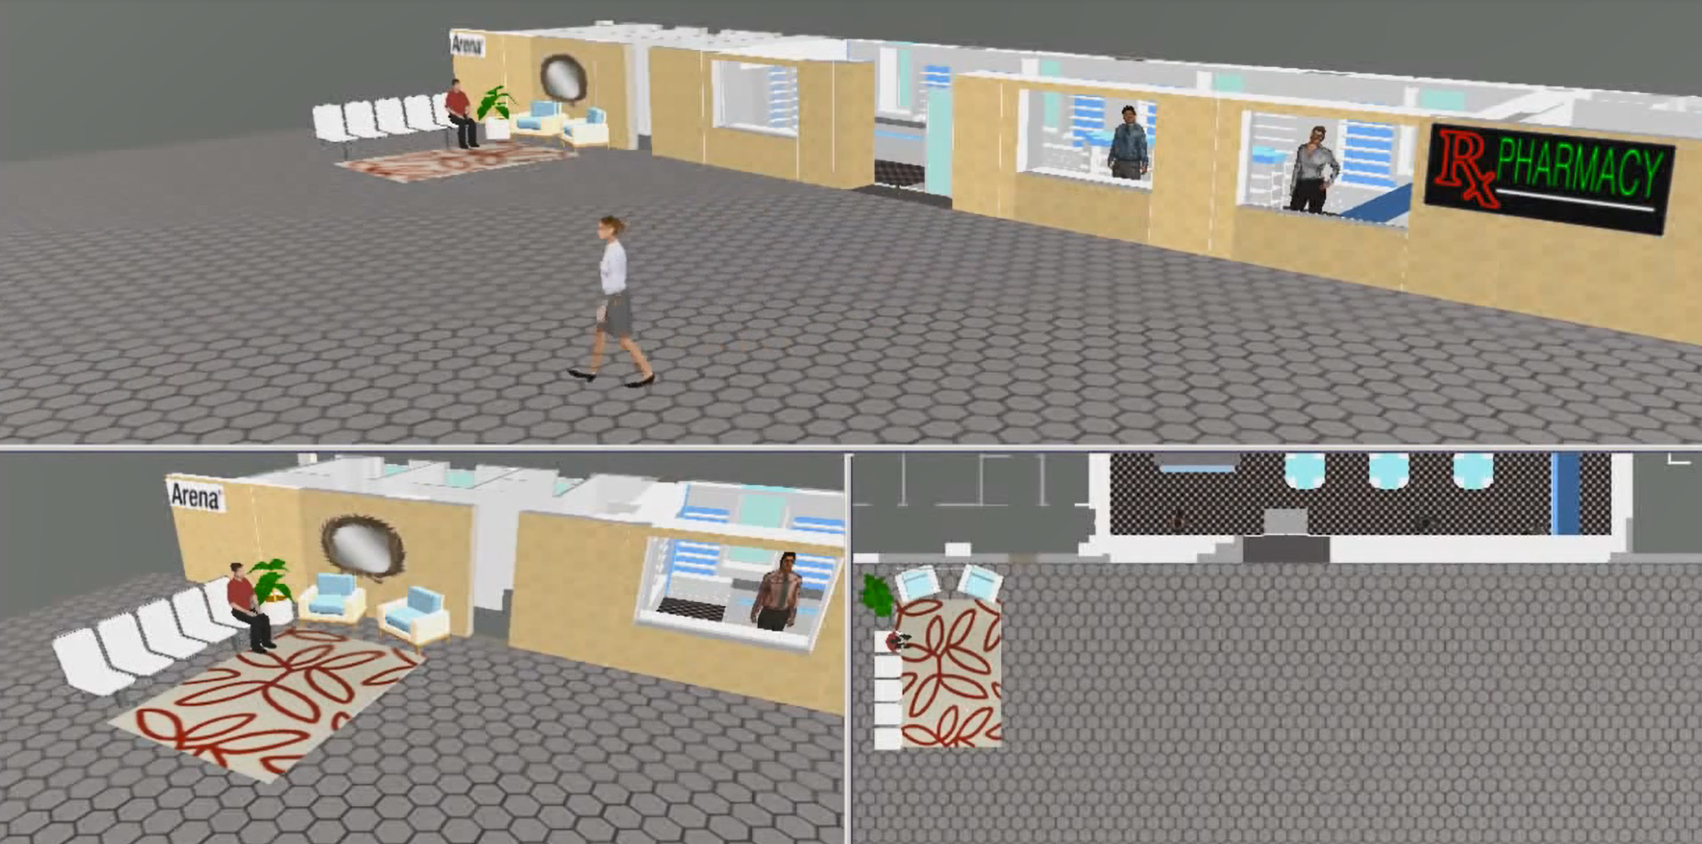 Food & Beverage  Arena Simulation Software